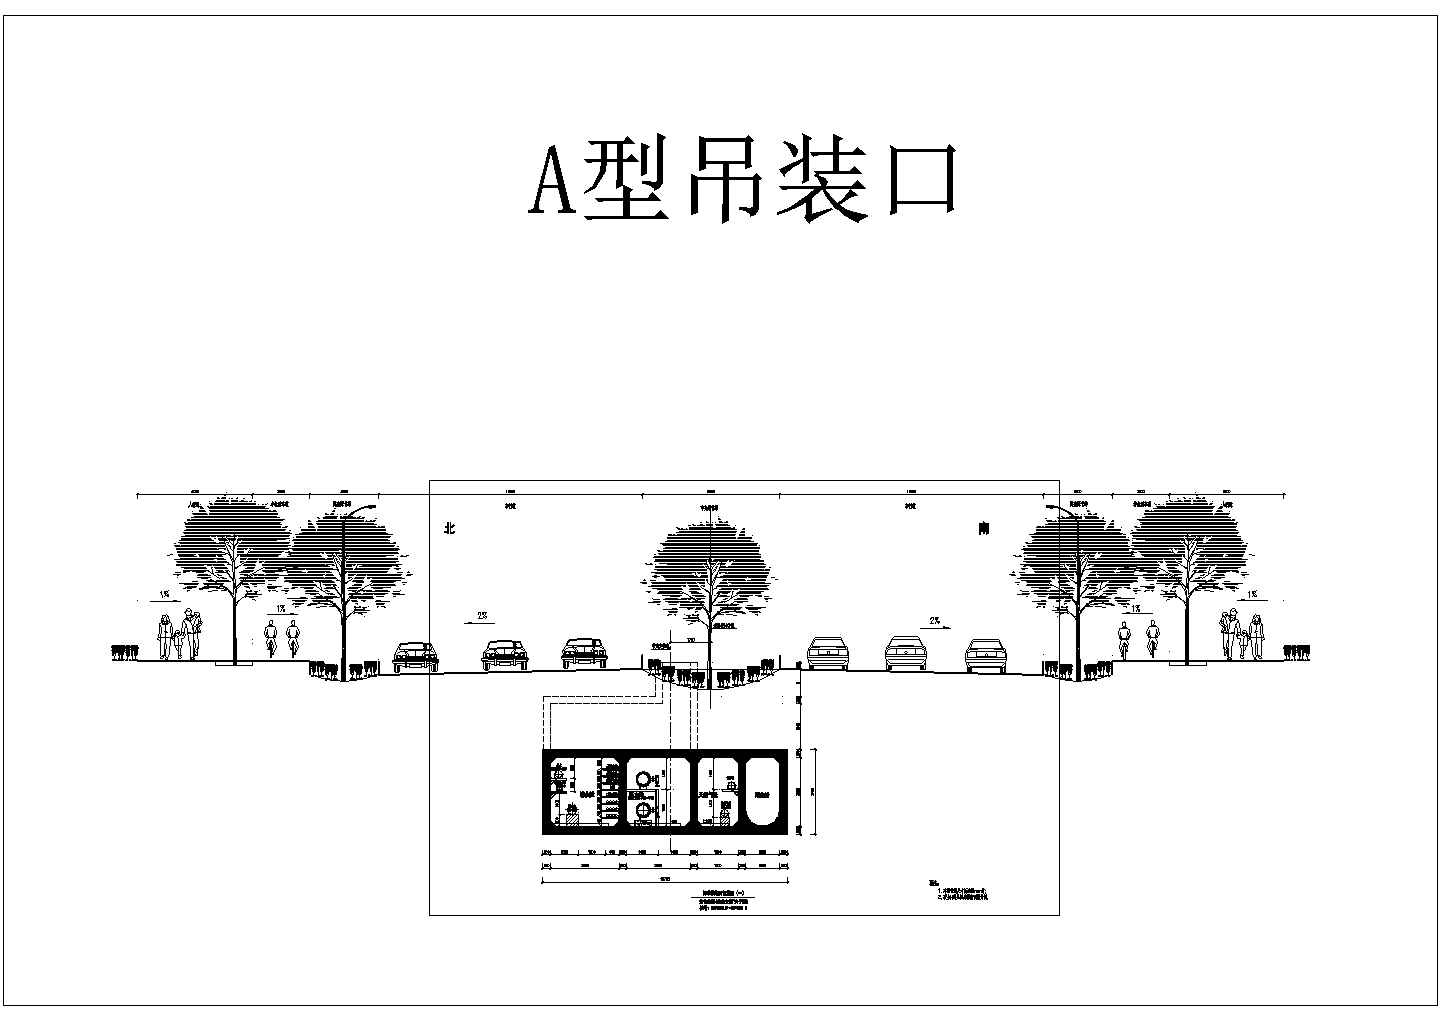 庆阳市安化华东路地下综合管廊工程 工艺专业初步设计